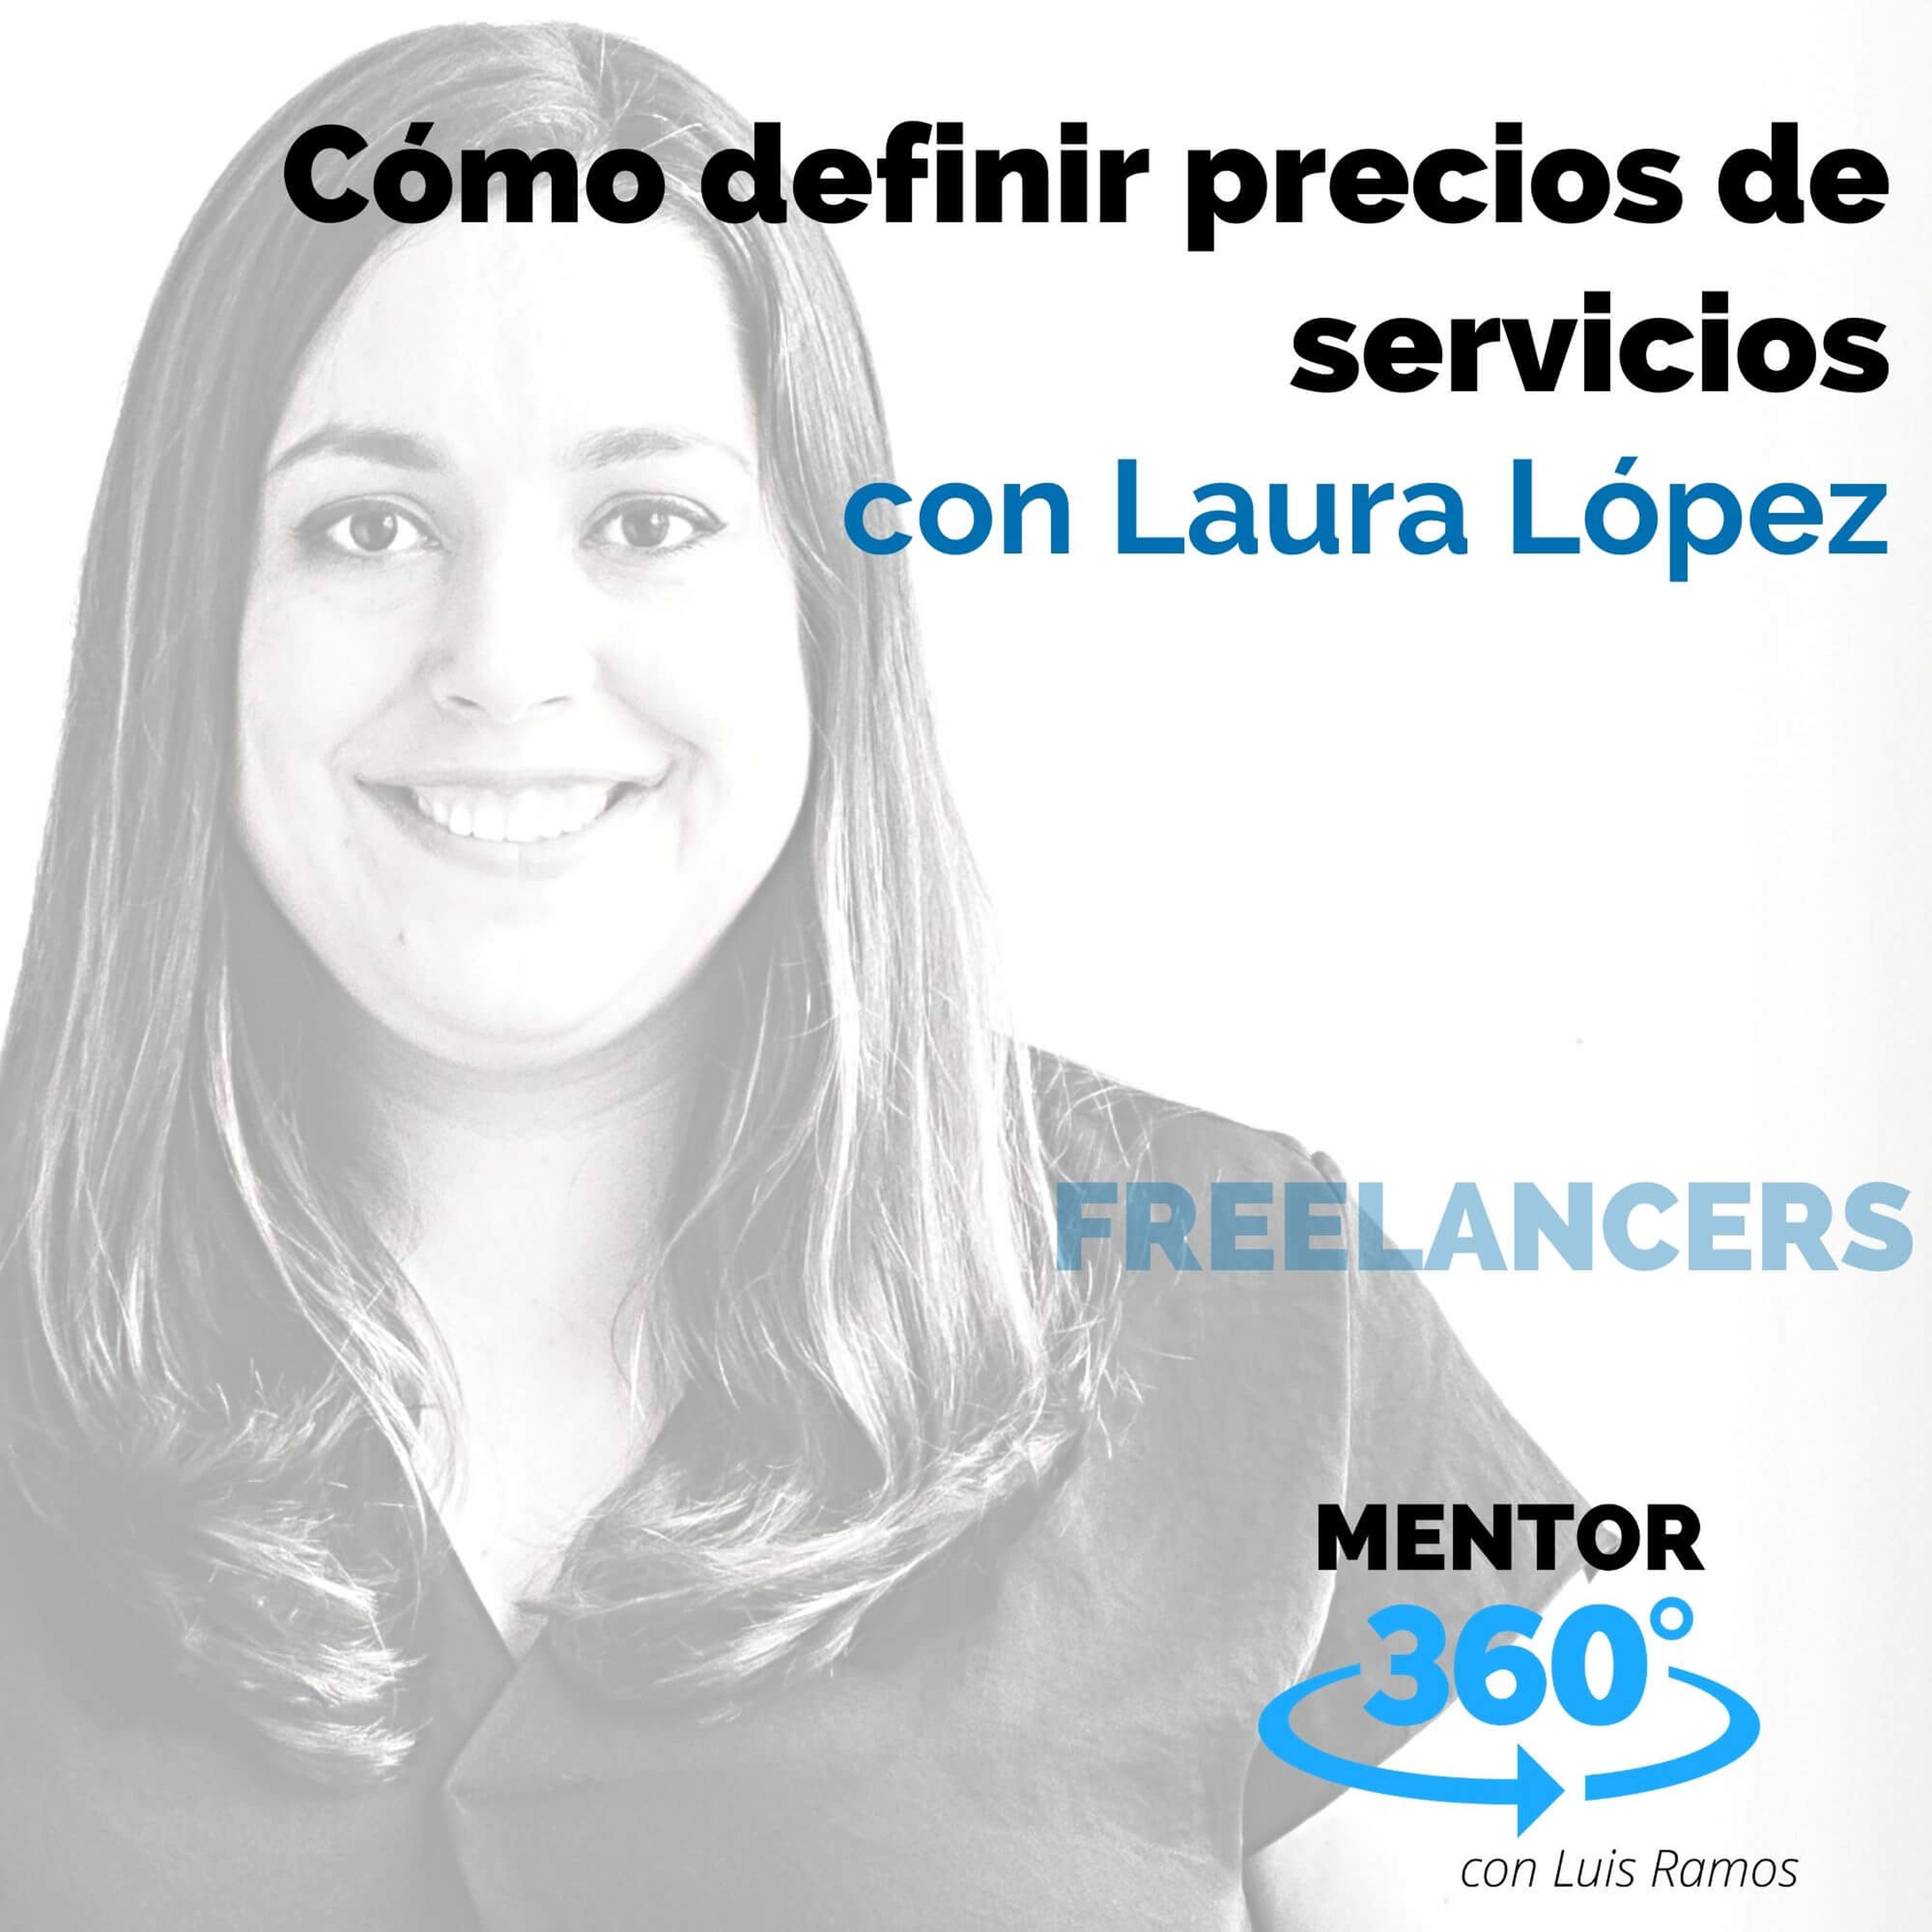 Cómo definir precios de servicios, con Laura López - FREELANCERS